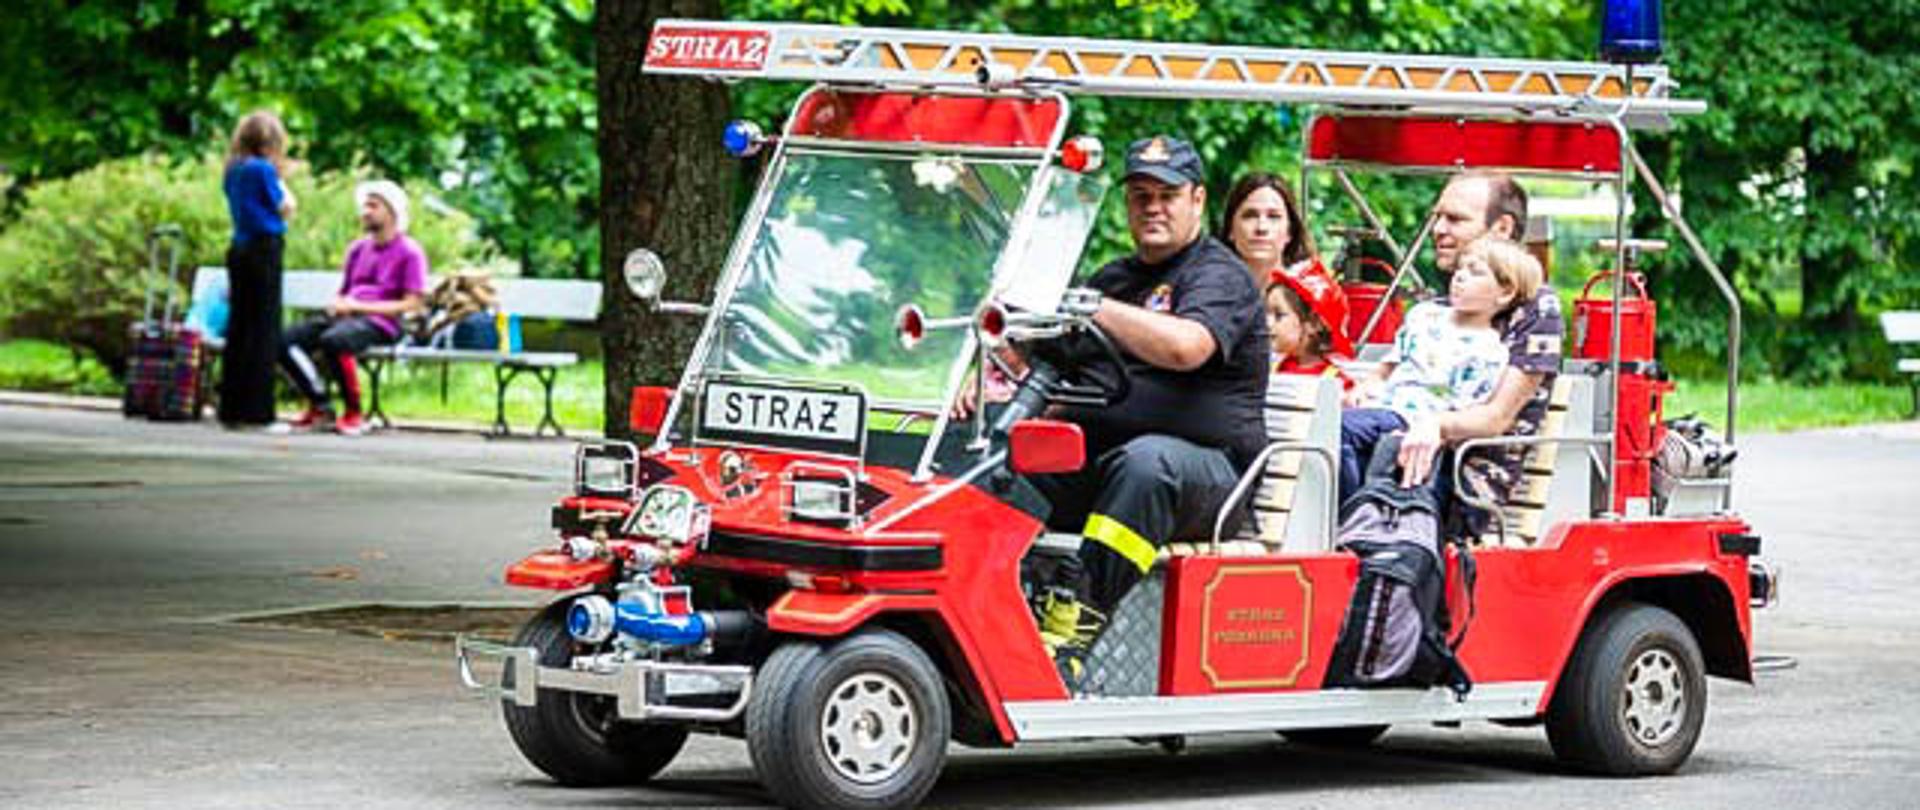 Na zdjęciu widać rodzinę z dziećmi oraz strażaka jadących melexem stylizowanym na wóz strażacki.